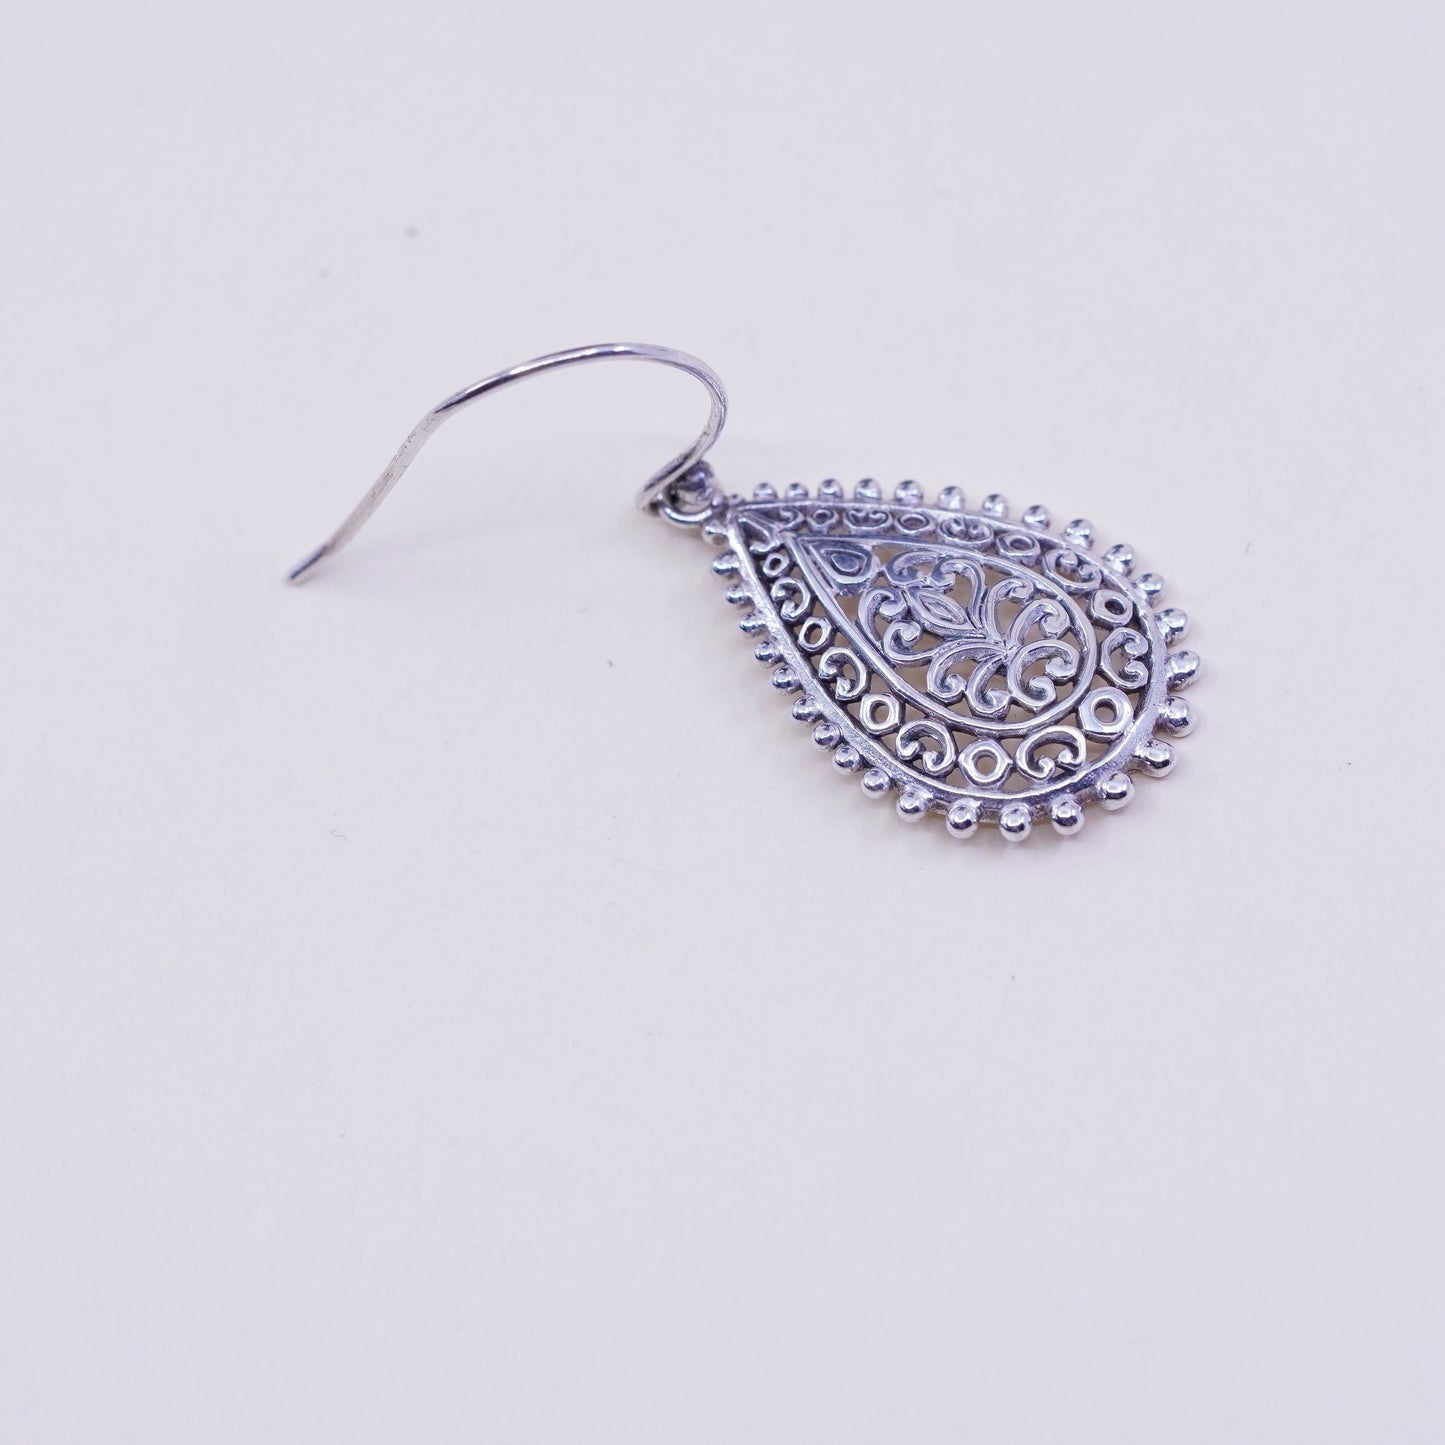 Vintage ATI Sterling silver handmade earrings, 925 filigree teardrop, stamped ATI 925